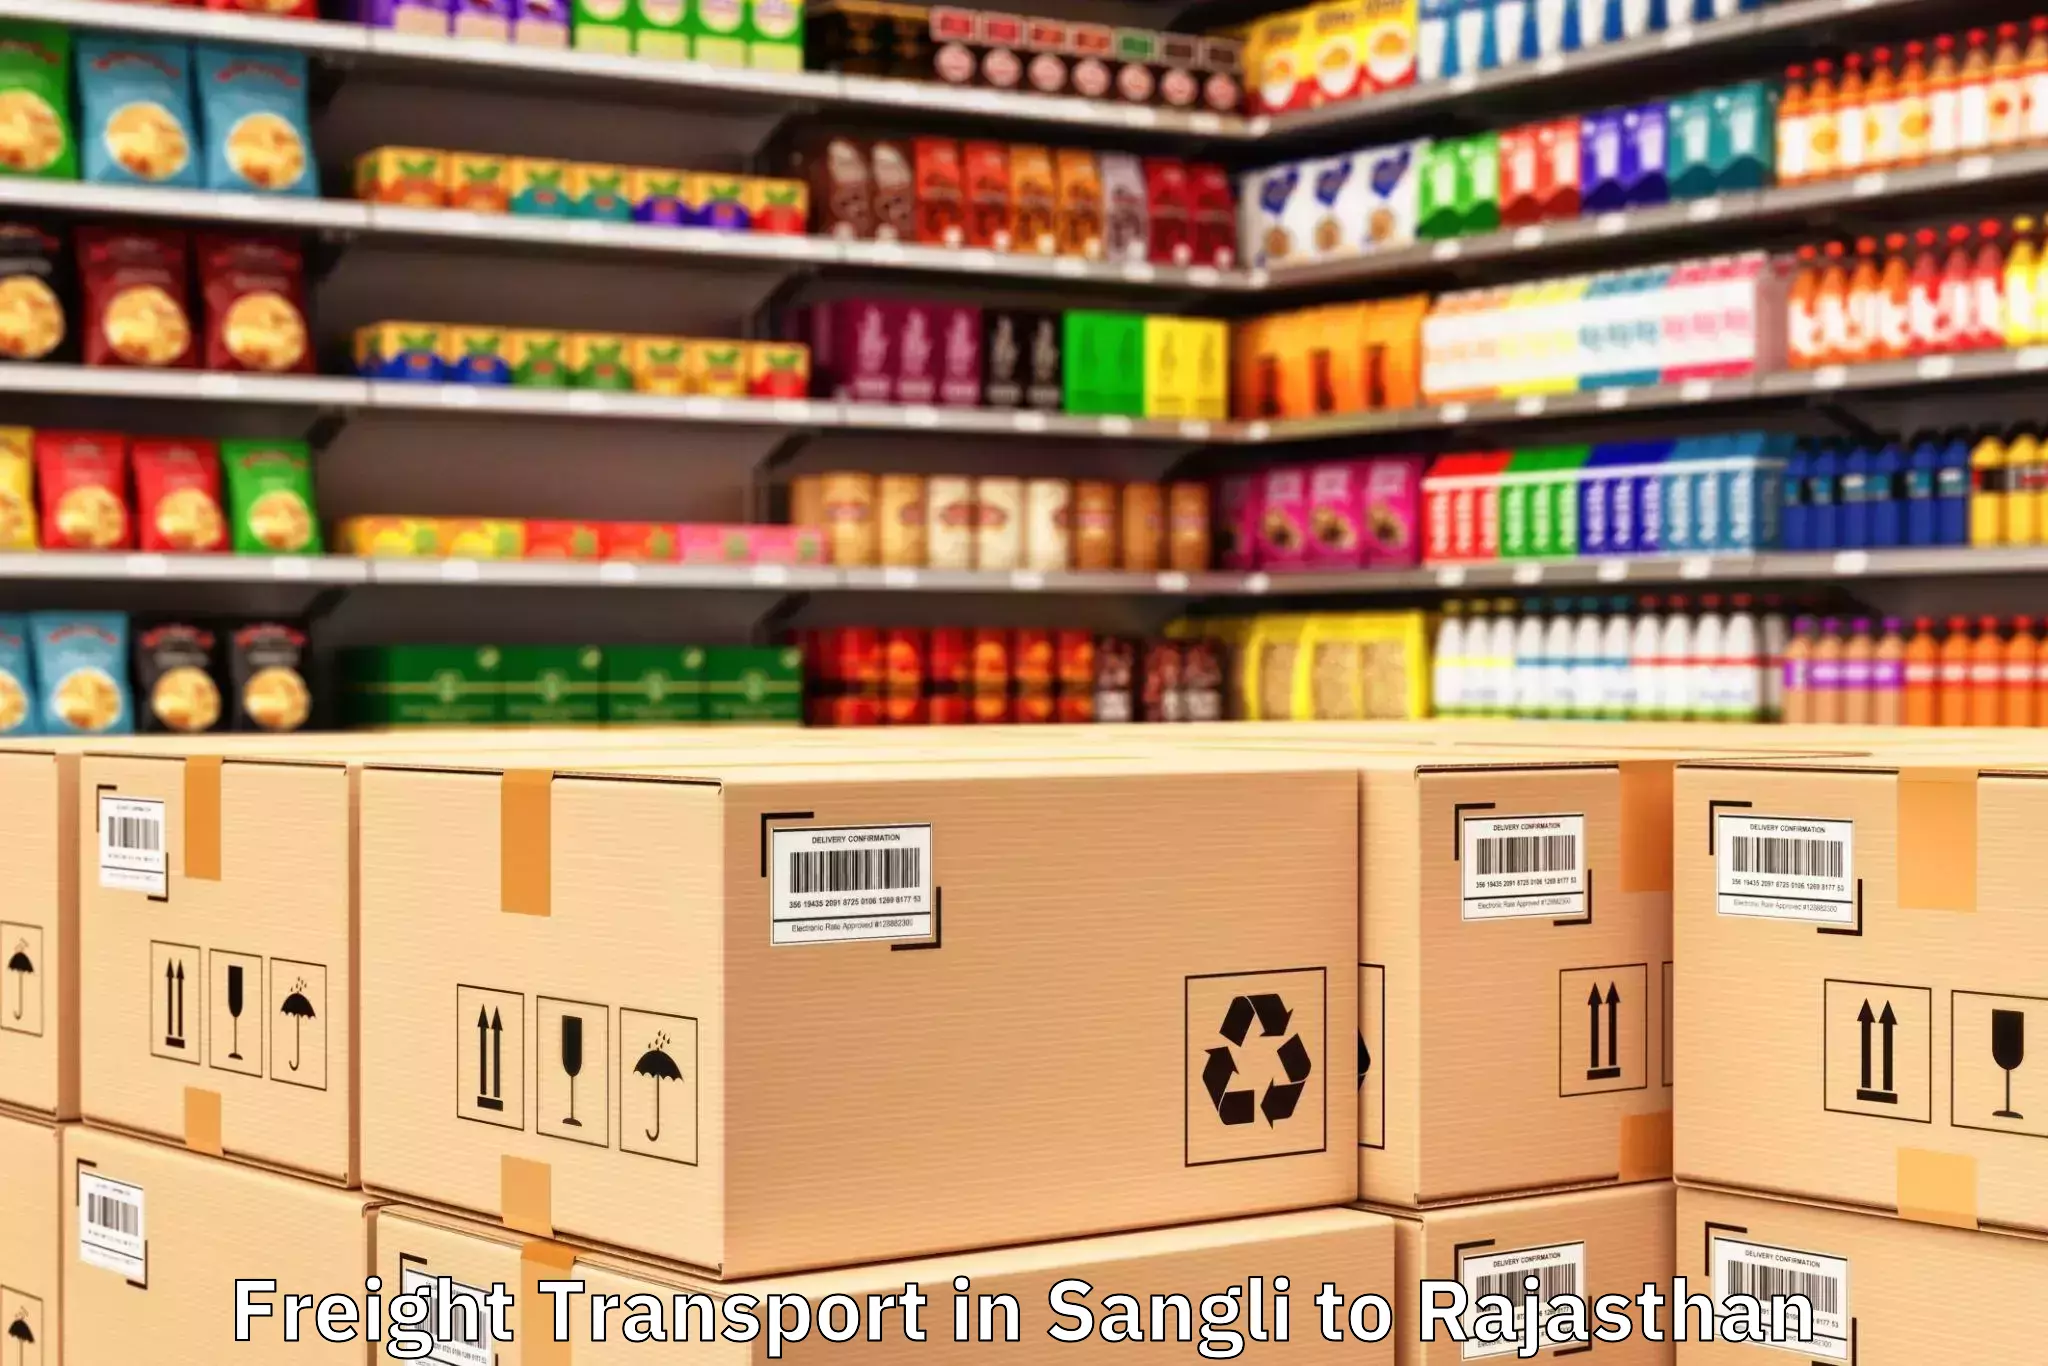 Sangli to Phalodi Freight Transport Booking